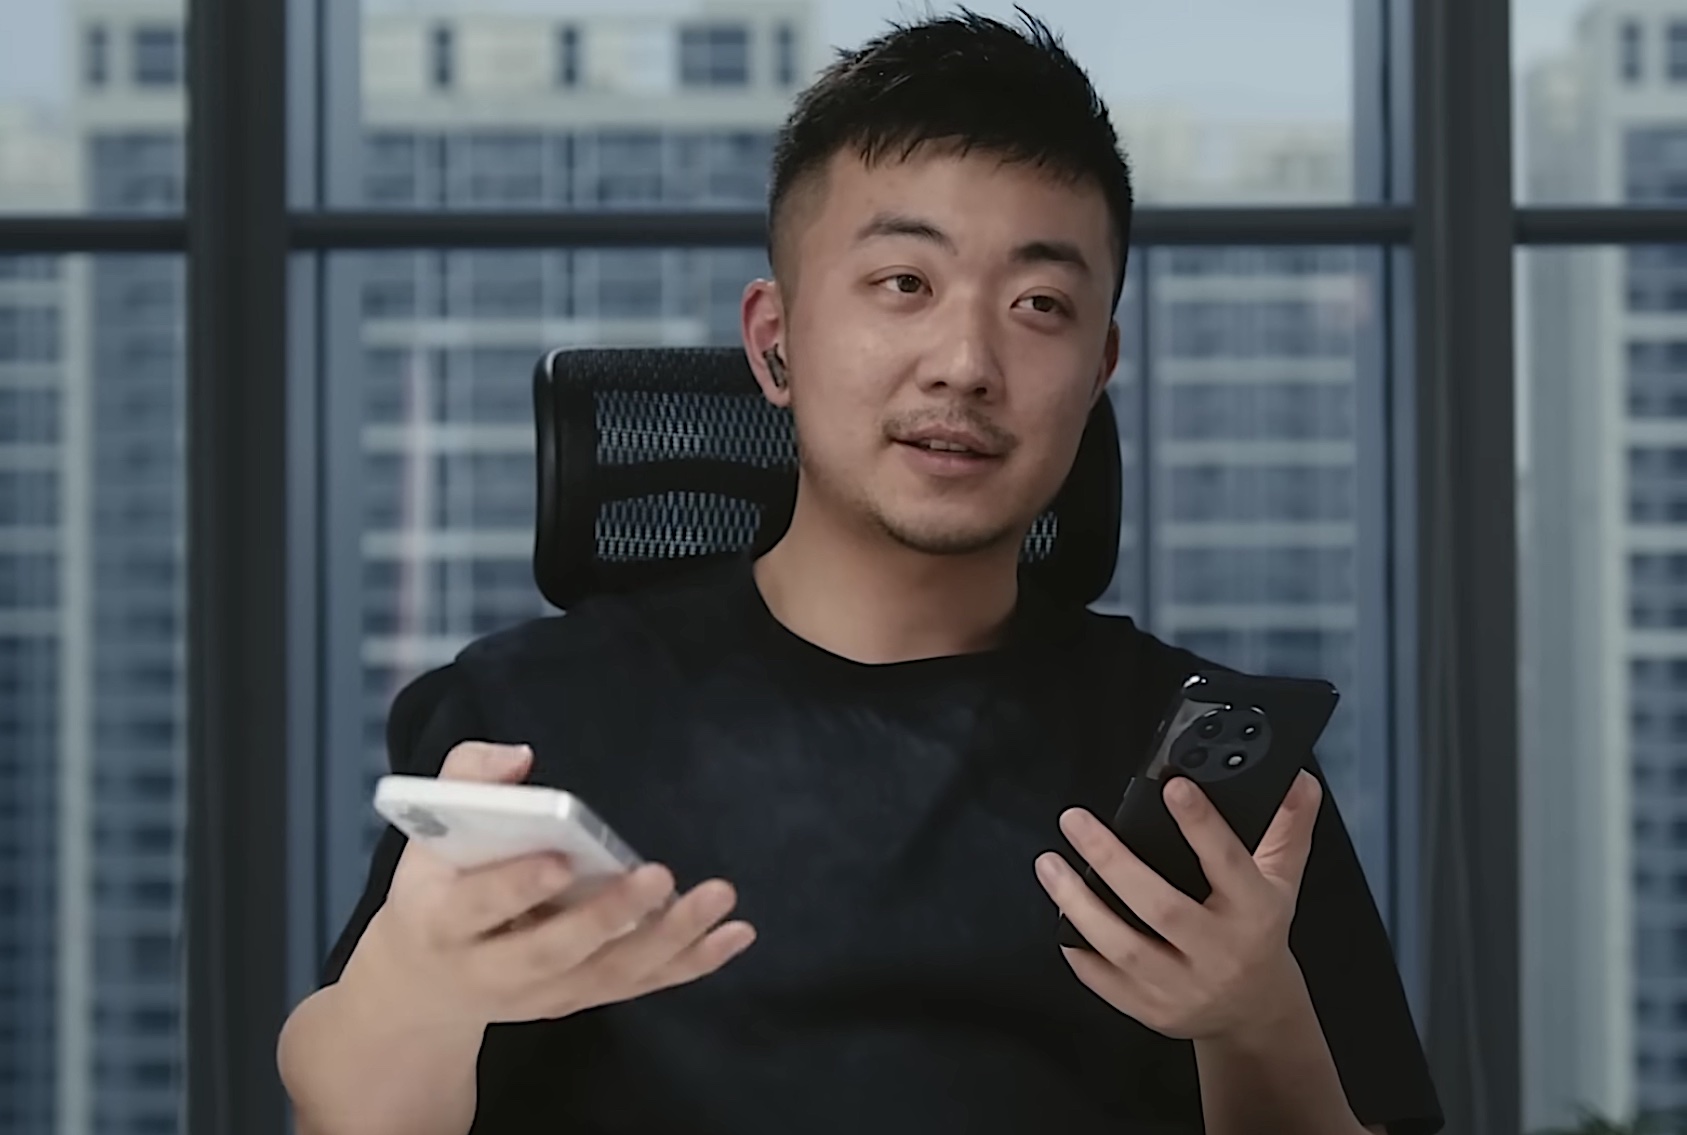 "Diseño premium, pero sin identidad": Carl Pei, ex CEO de OnePlus, valora el buque insignia OnePlus 11